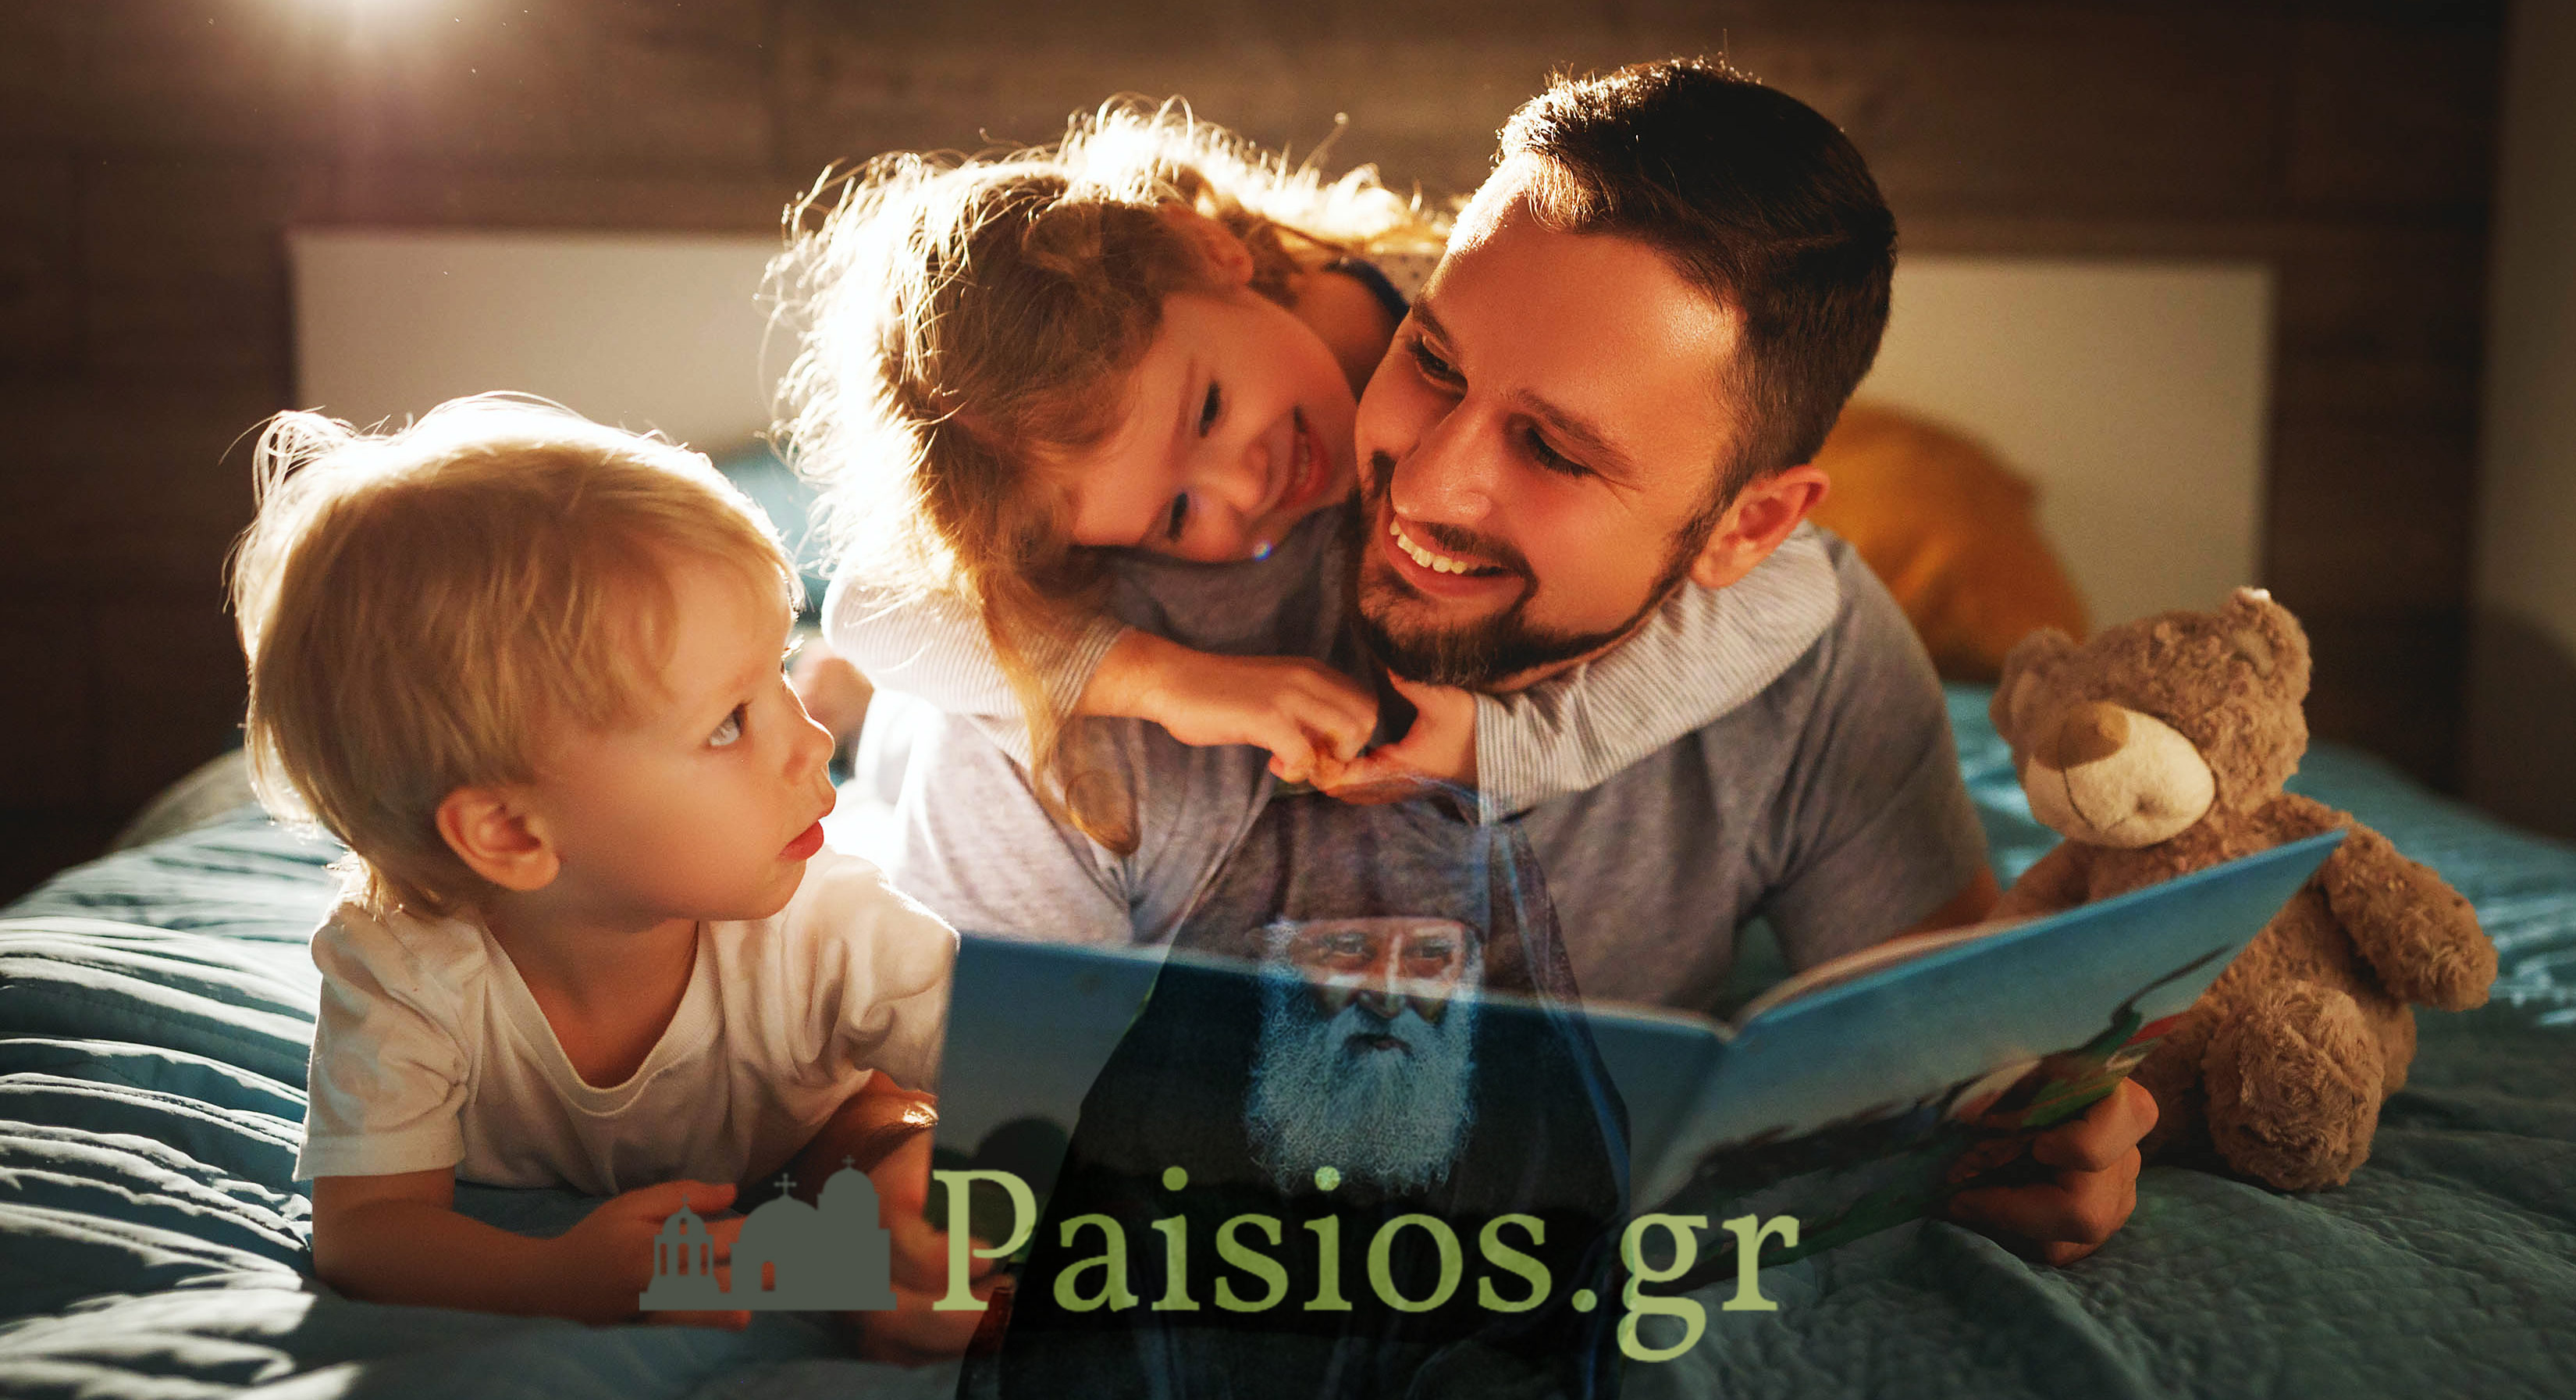 παισιοσ-συμβουλες-γονεις-παιδια-αγιος-παισιος-παιδια-paisiosgr